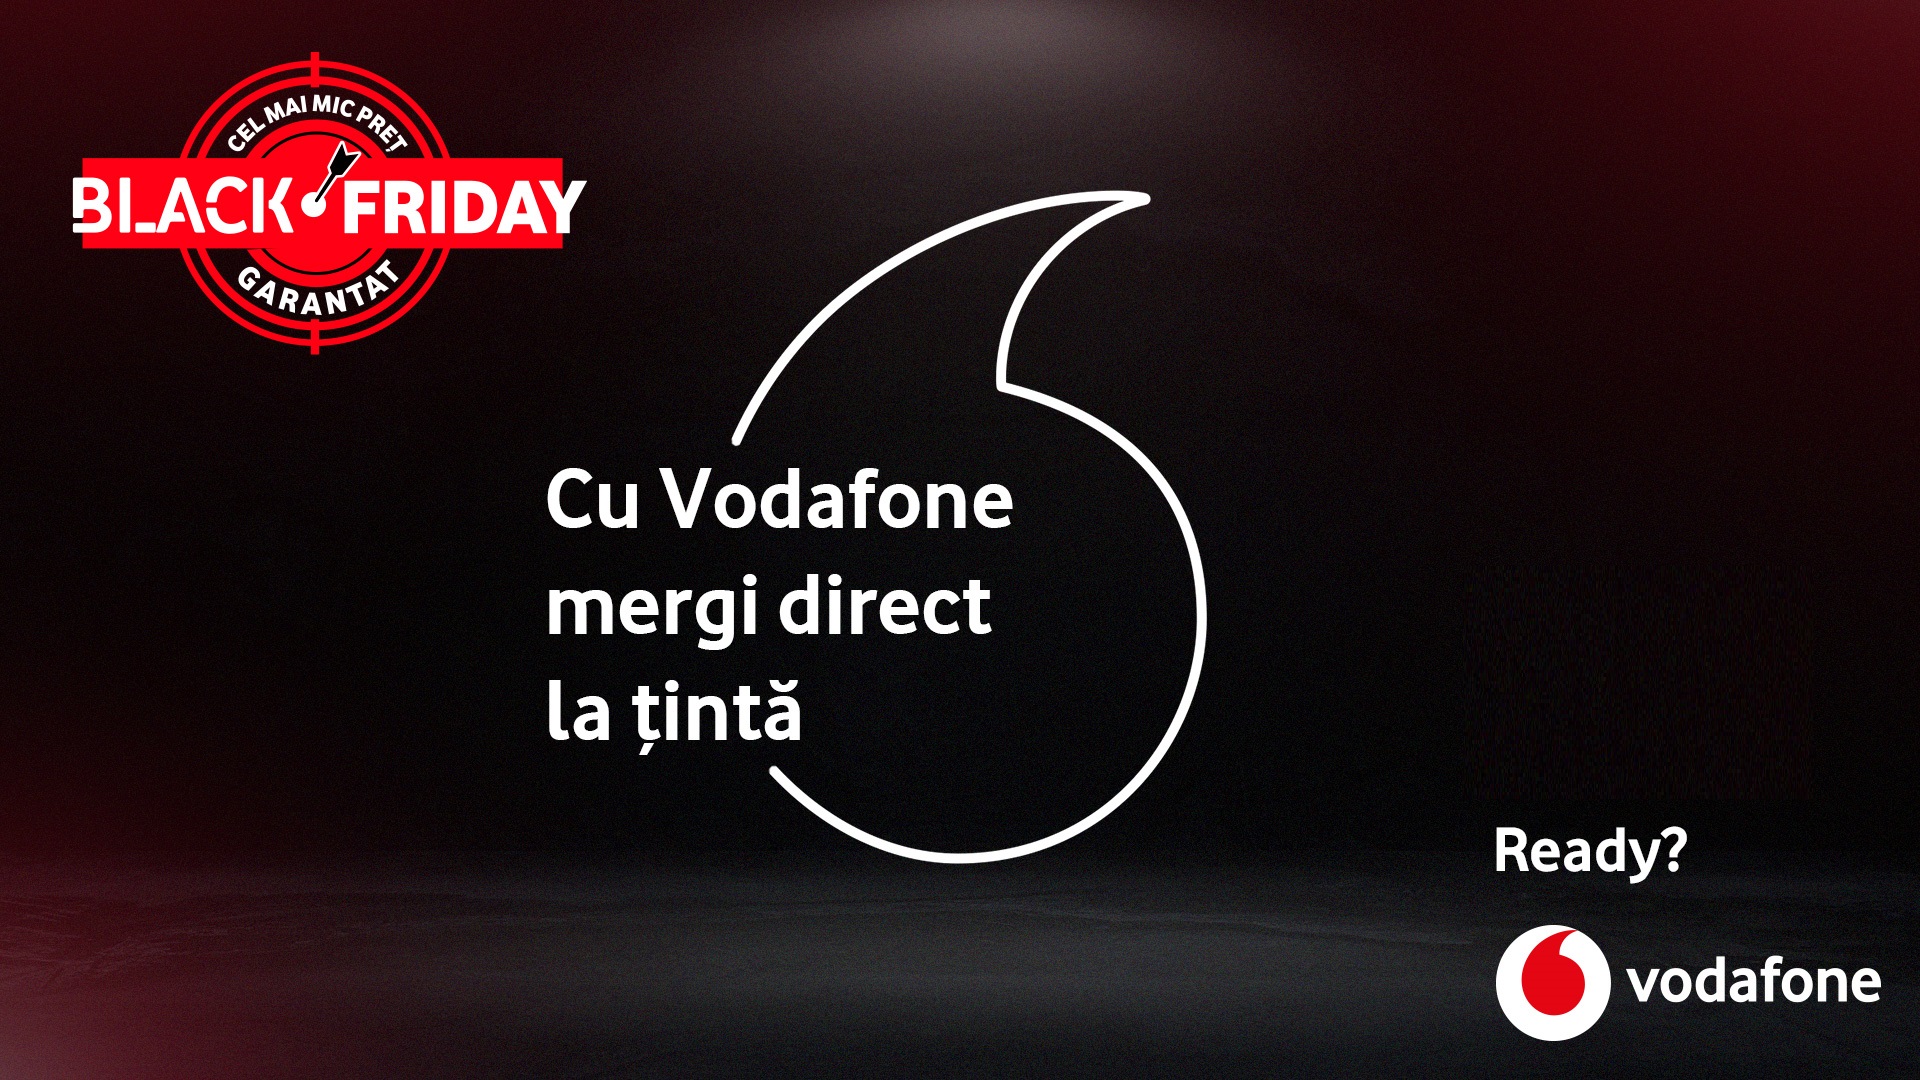 Black Friday Vodafone